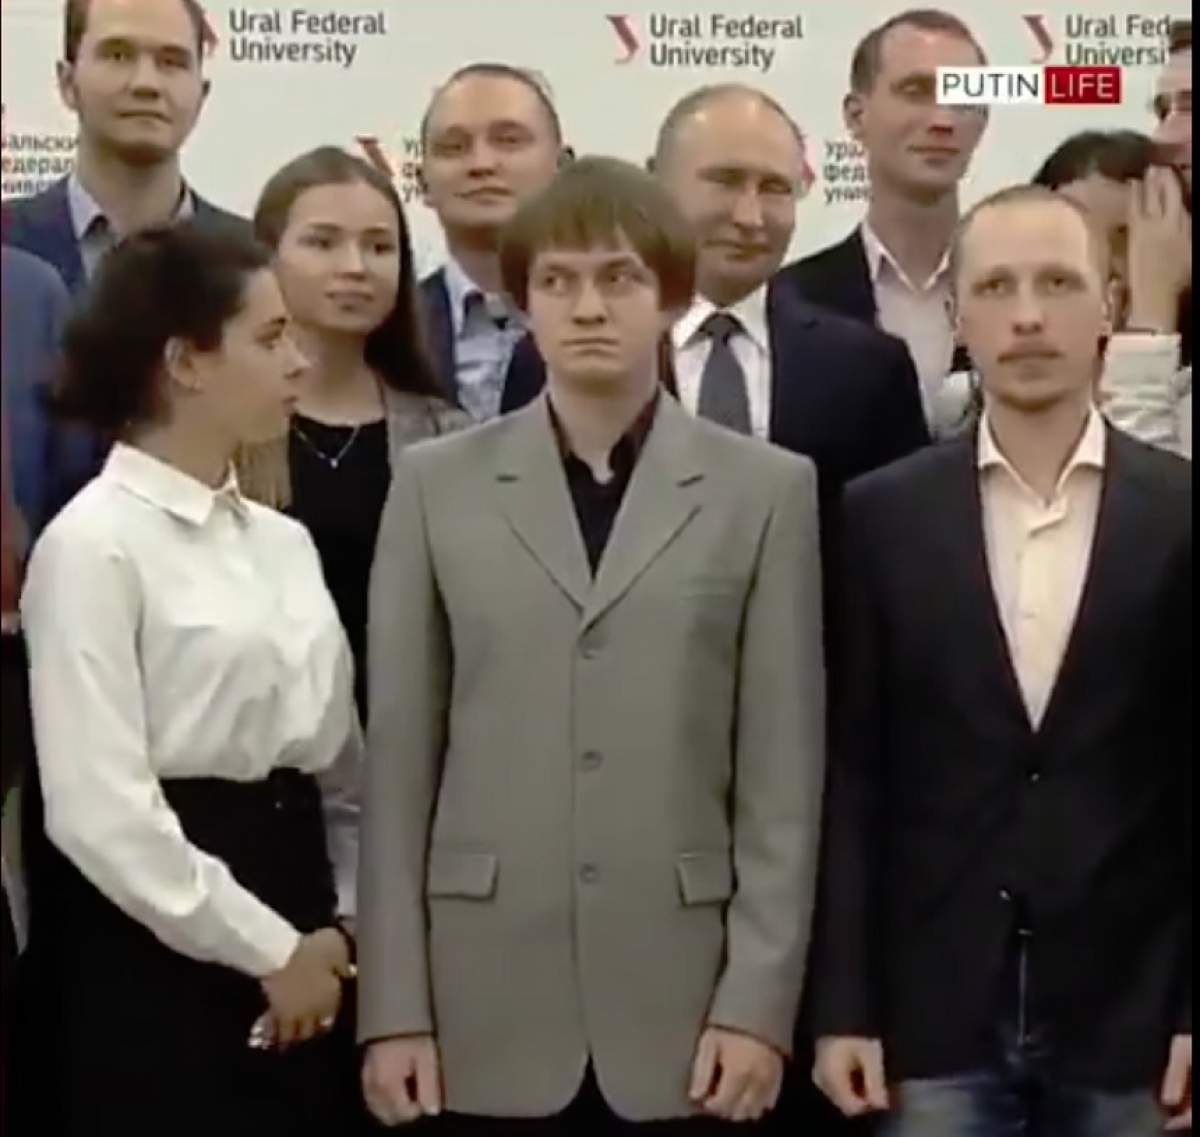 Moment savuros! Vladimir Putin, "acoperit" de un student la o poză de grup. "Mai trăieşte?". VIDEO